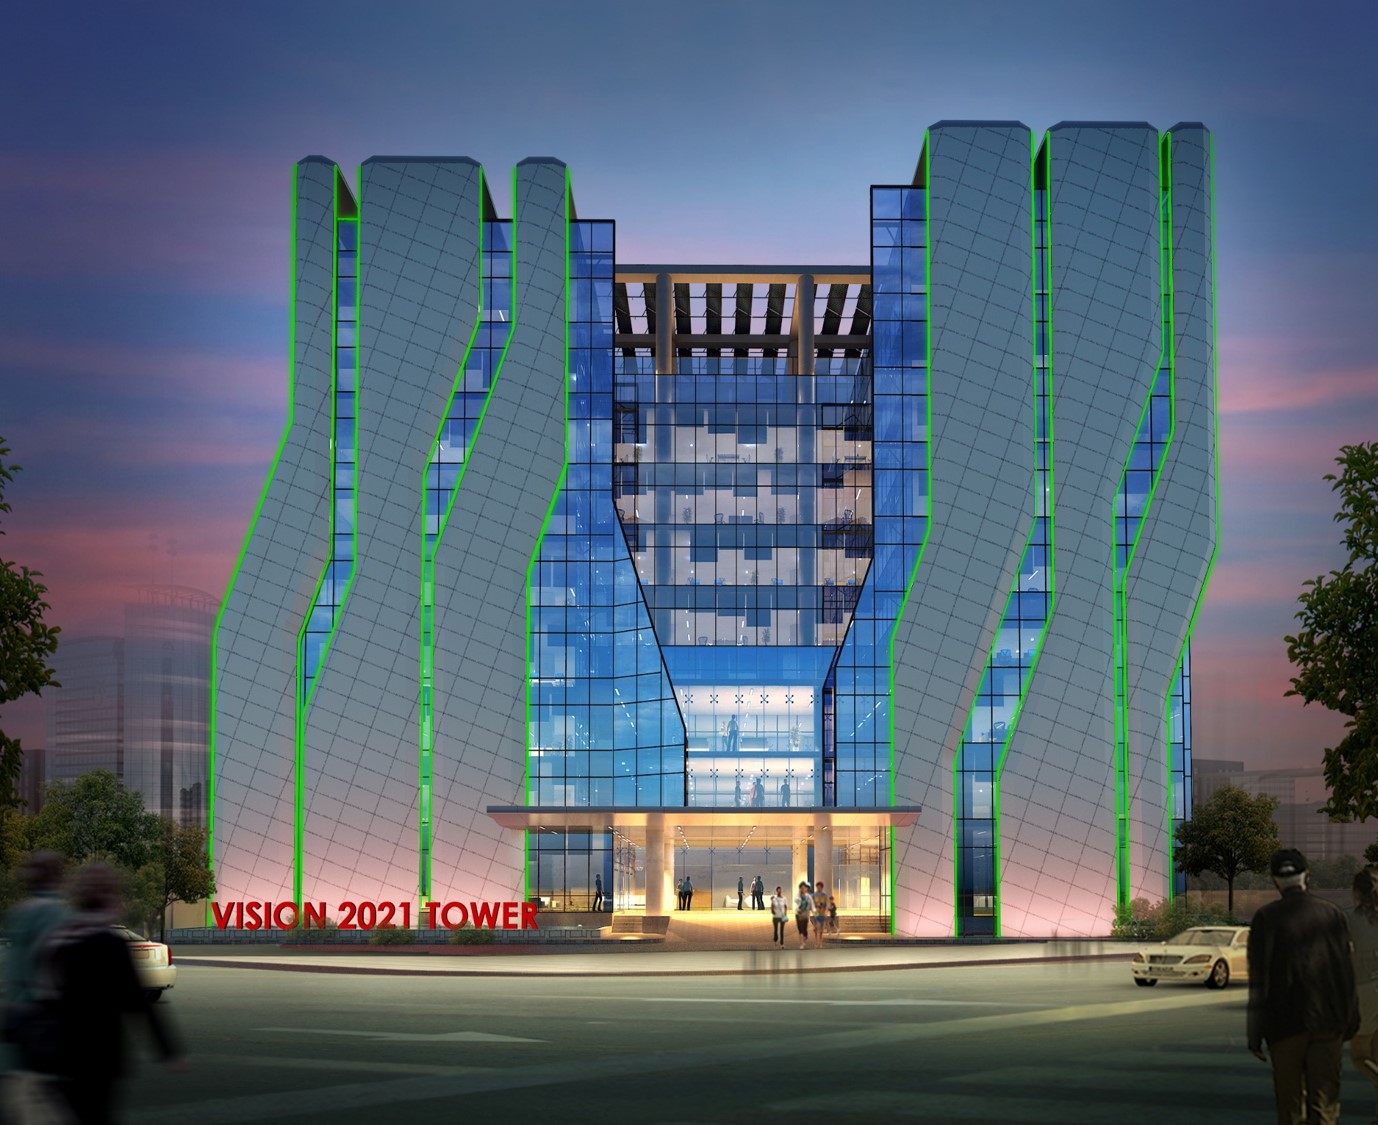 Dhaka Hi-Tech park (Vision 2021 Tower)